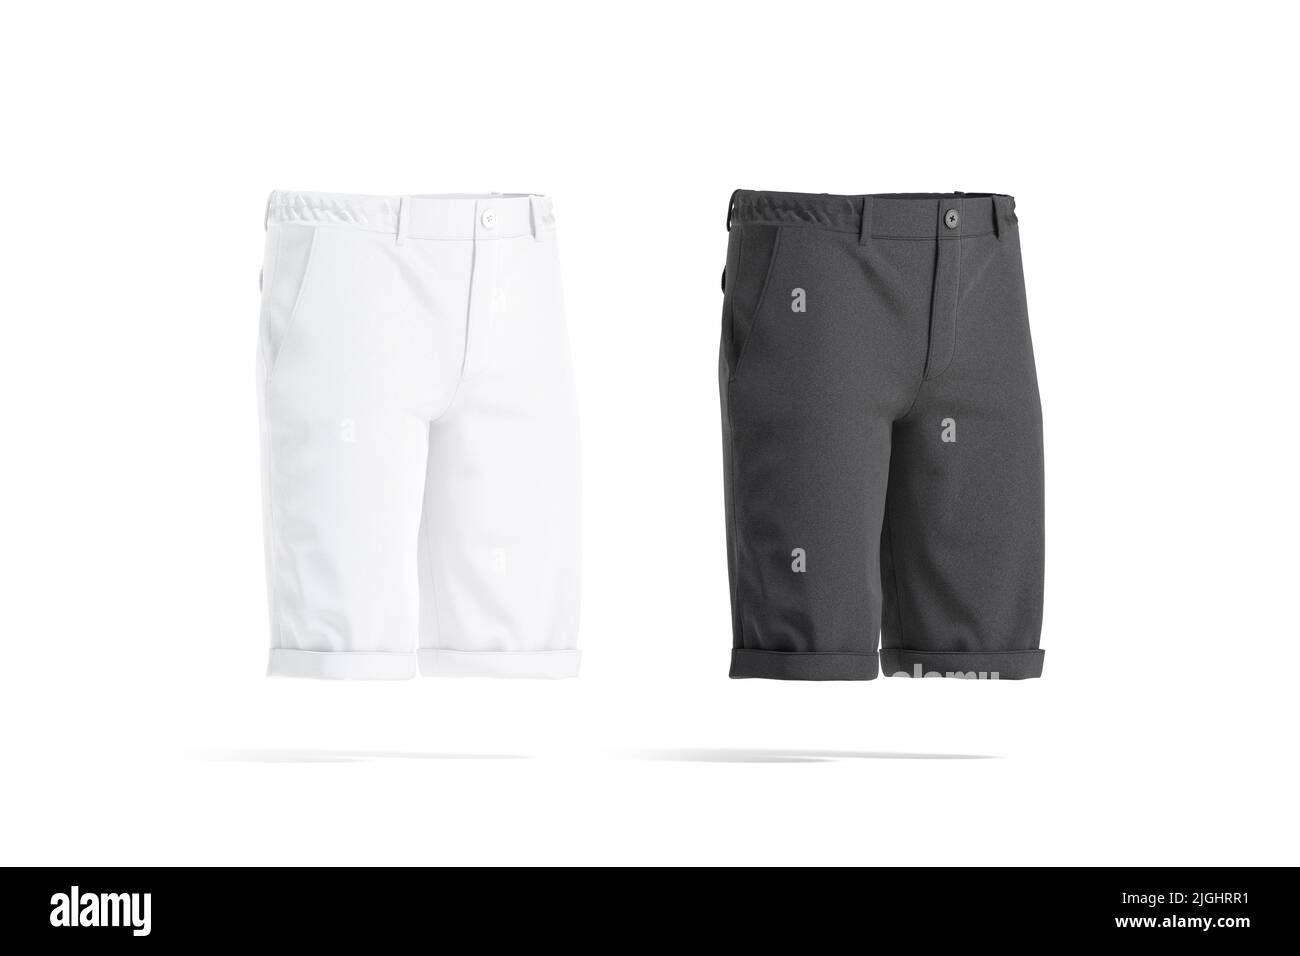 Blanco negro y blanco hombres shorts mockup, vista lateral Foto de stock